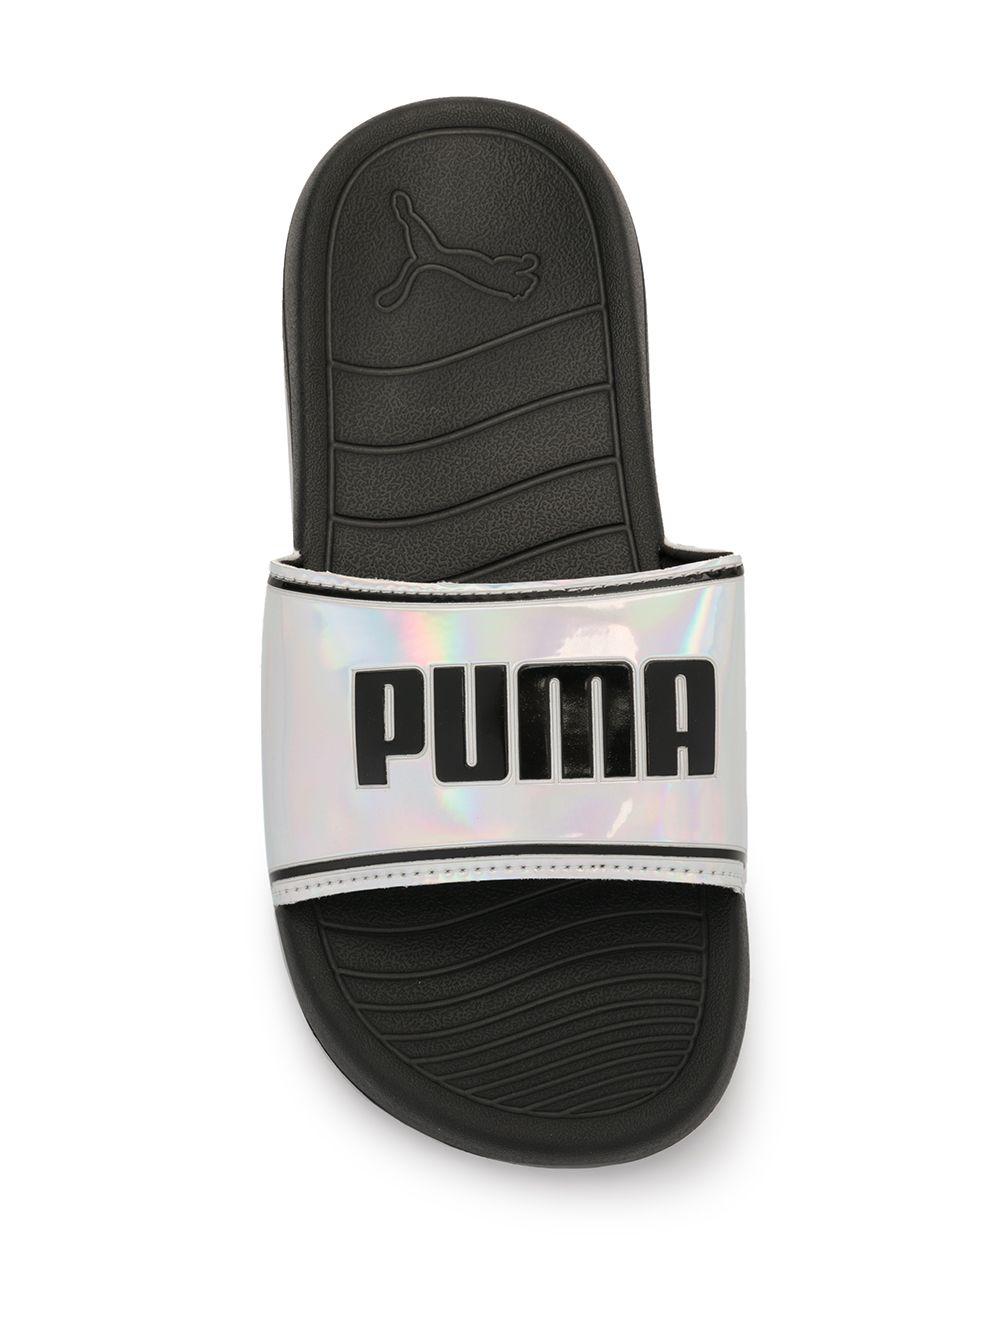 puma slides iridescent